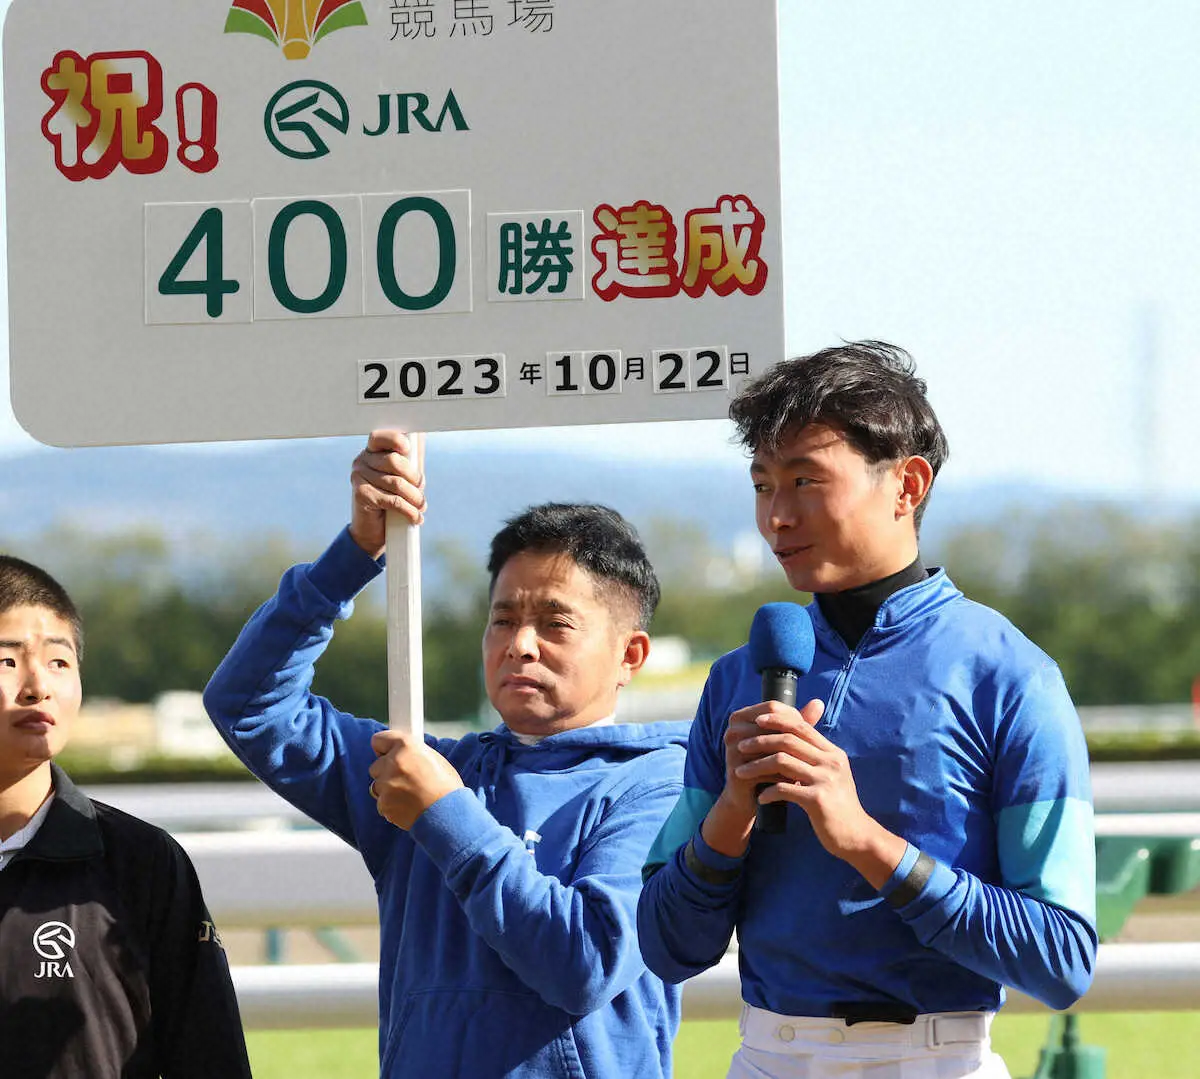 岩田望来がJRA通算400勝「通過点だと思っています」武豊に次ぐ史上2番目の若さで達成